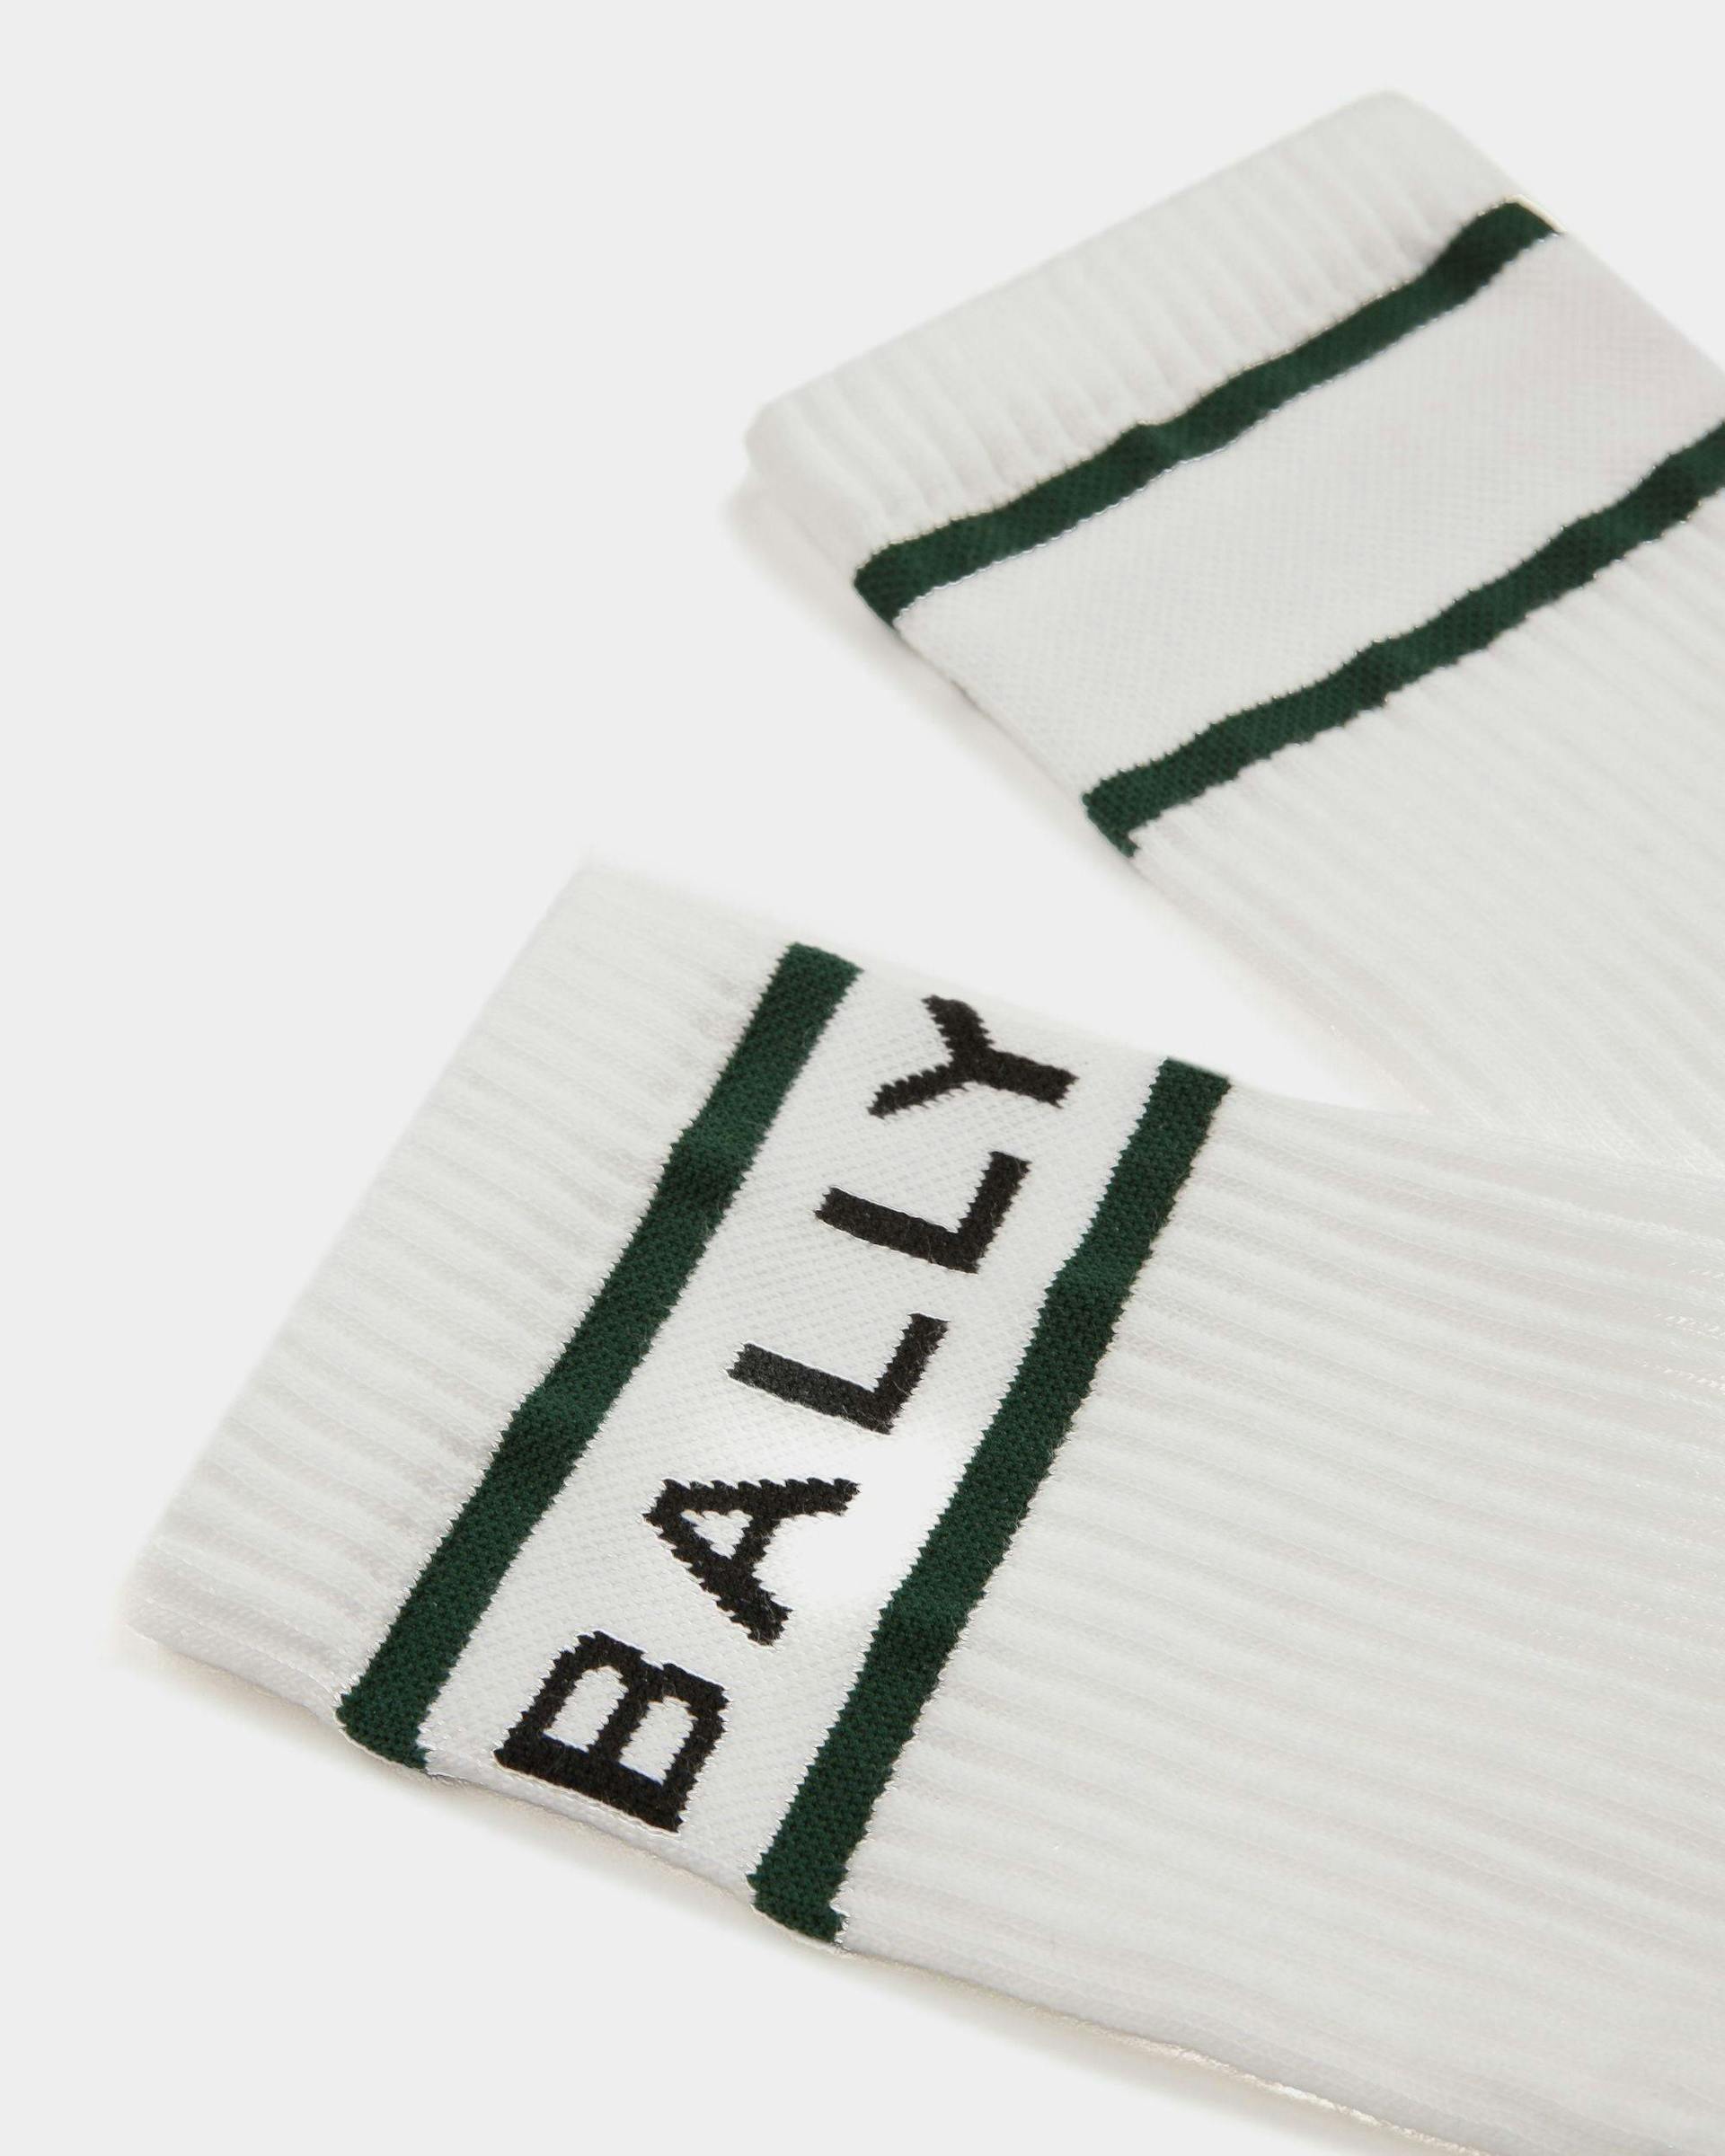 Calze Bally Stripe In Bianco E Verde - Uomo - Bally - 02